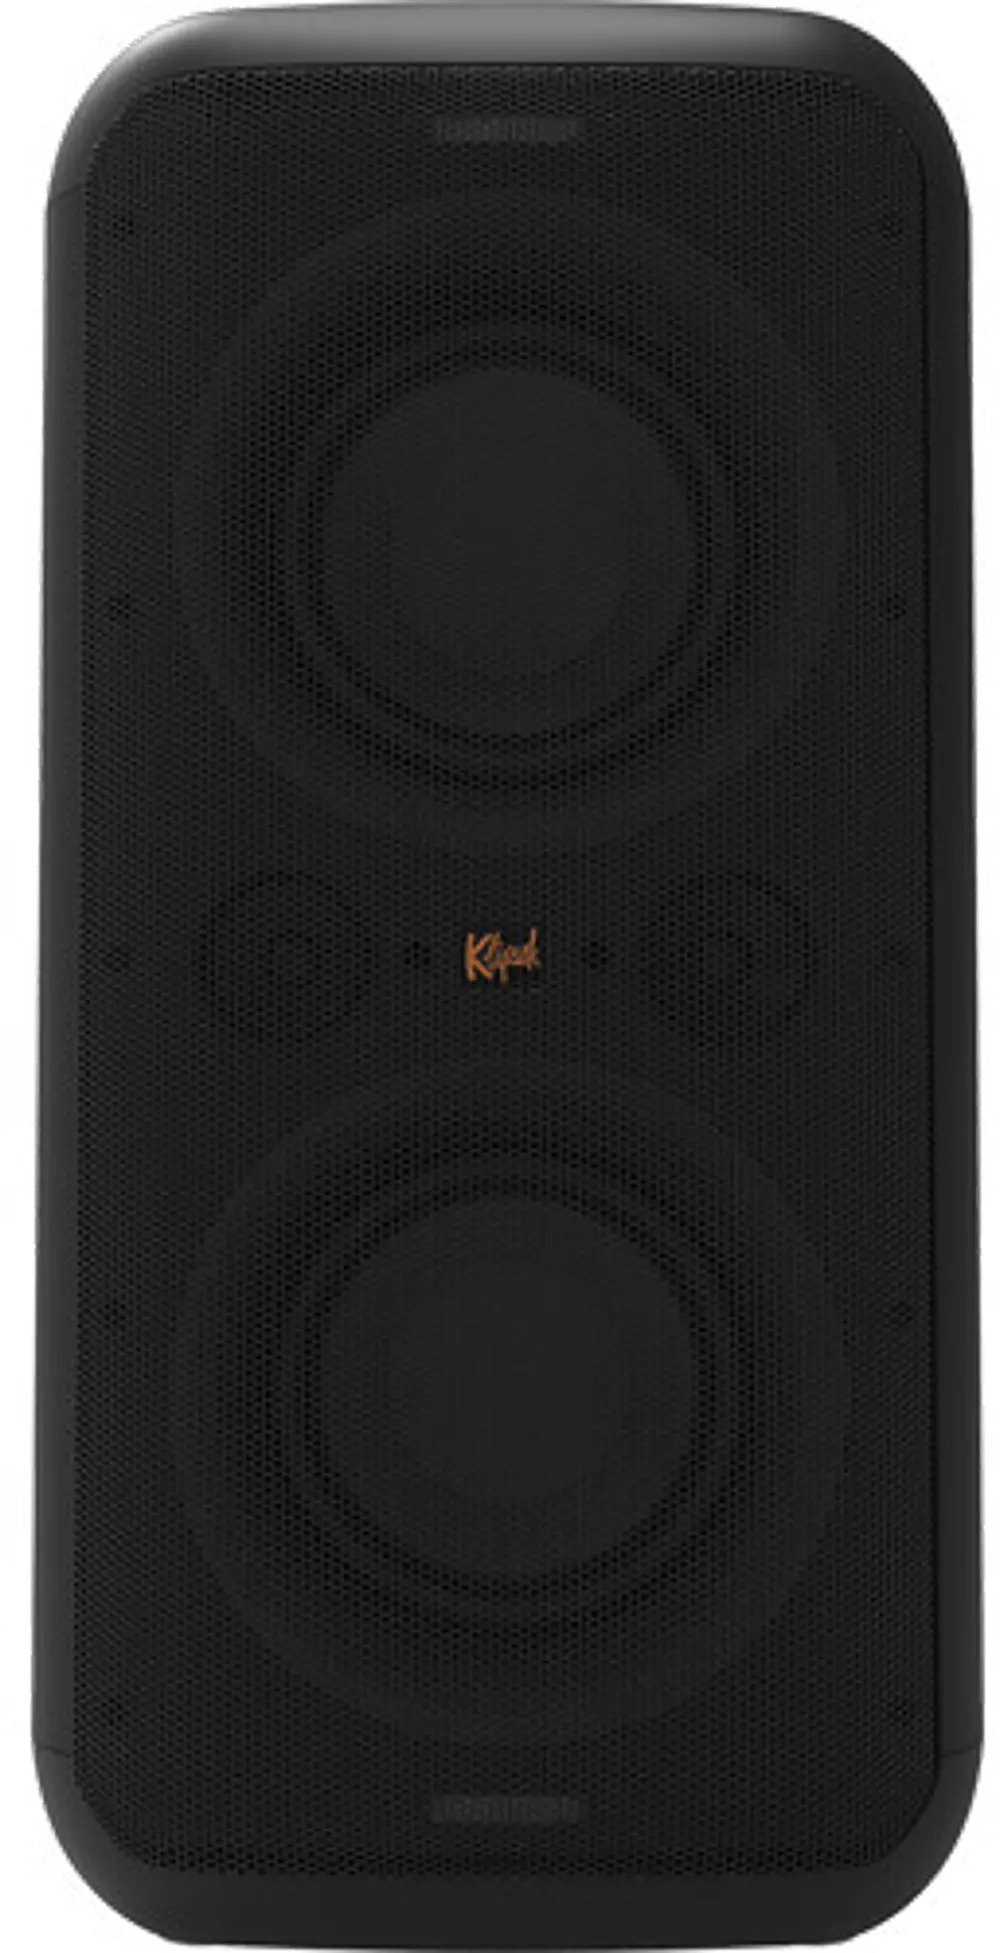 GIG_XXL Klipsch Gig XXL Portable Wireless Party Speaker-1